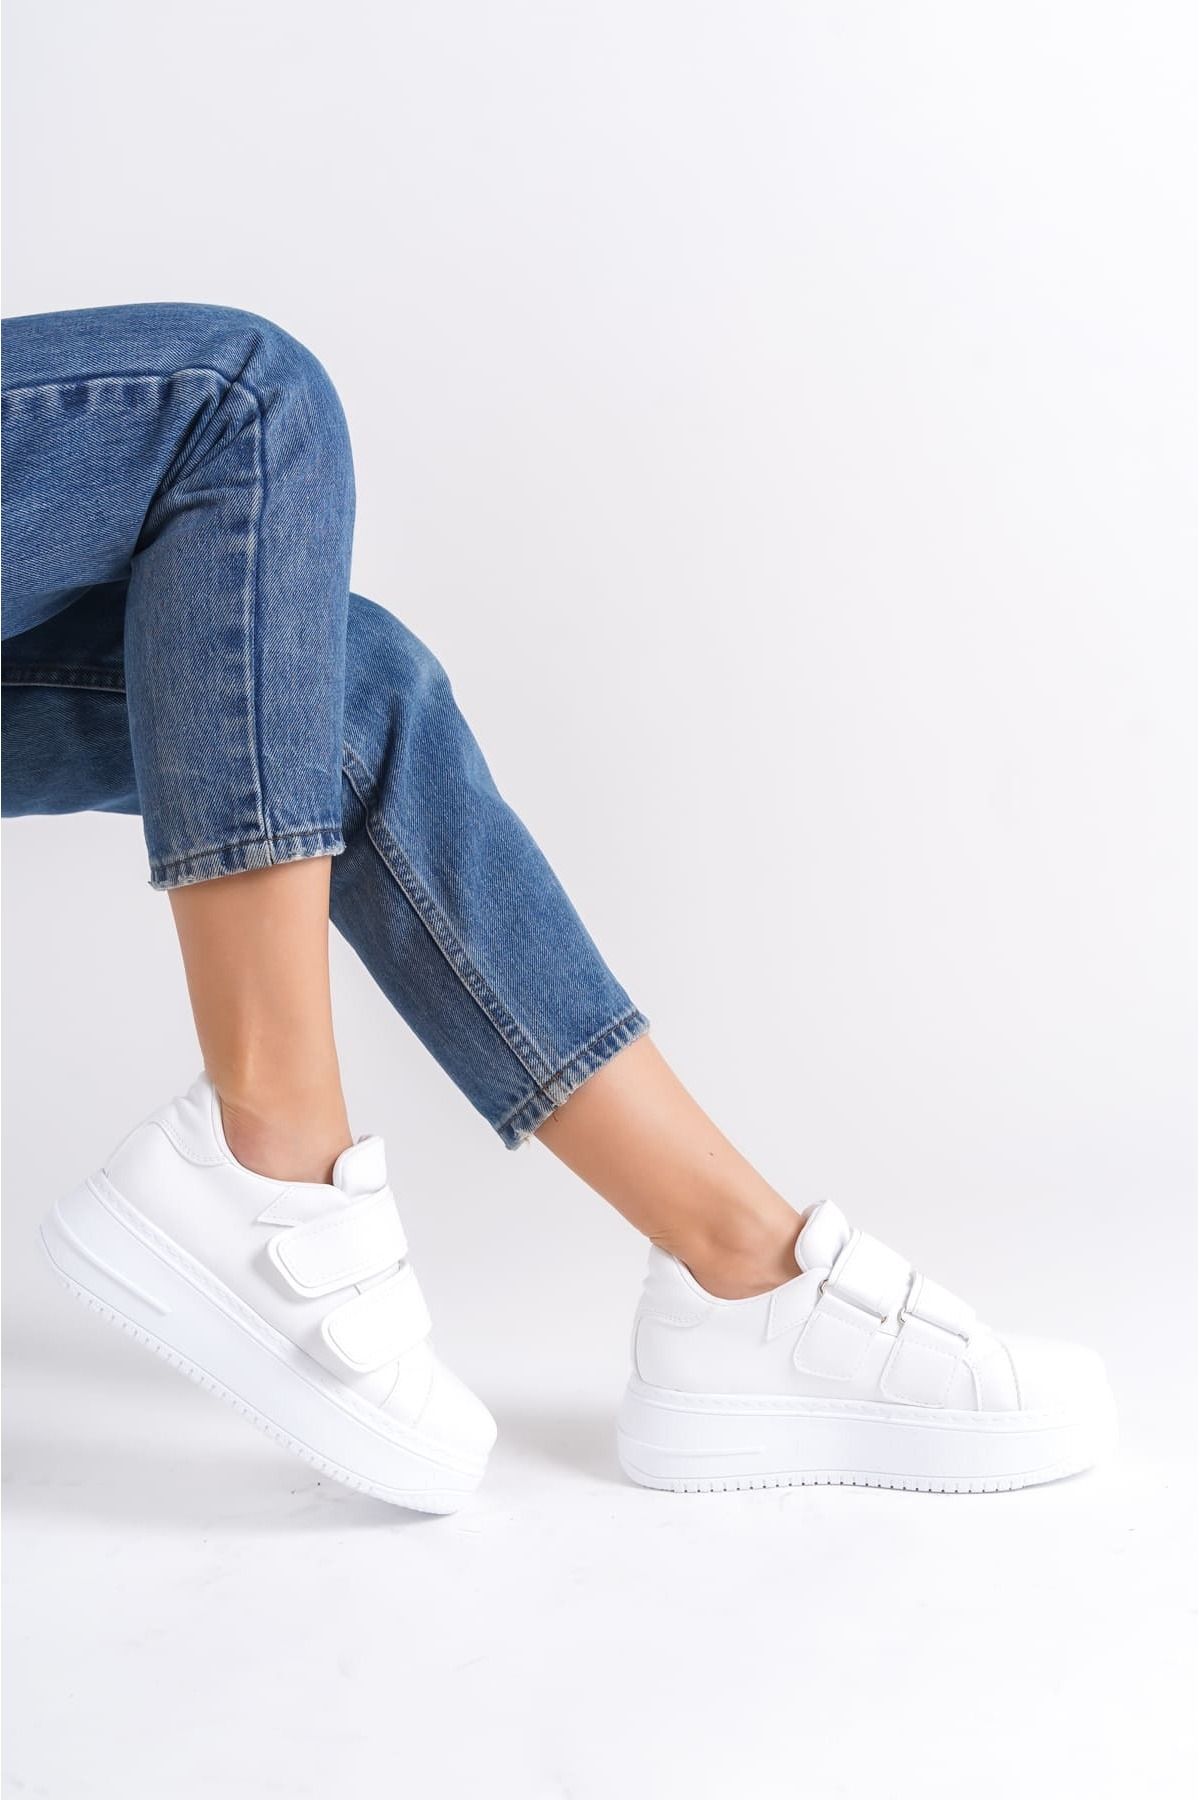 Mardel Store SERAH Bağcıksız Cırt Cırtlı Ortopedik Taban Kadın Sneaker Ayakkabı BT Beyaz